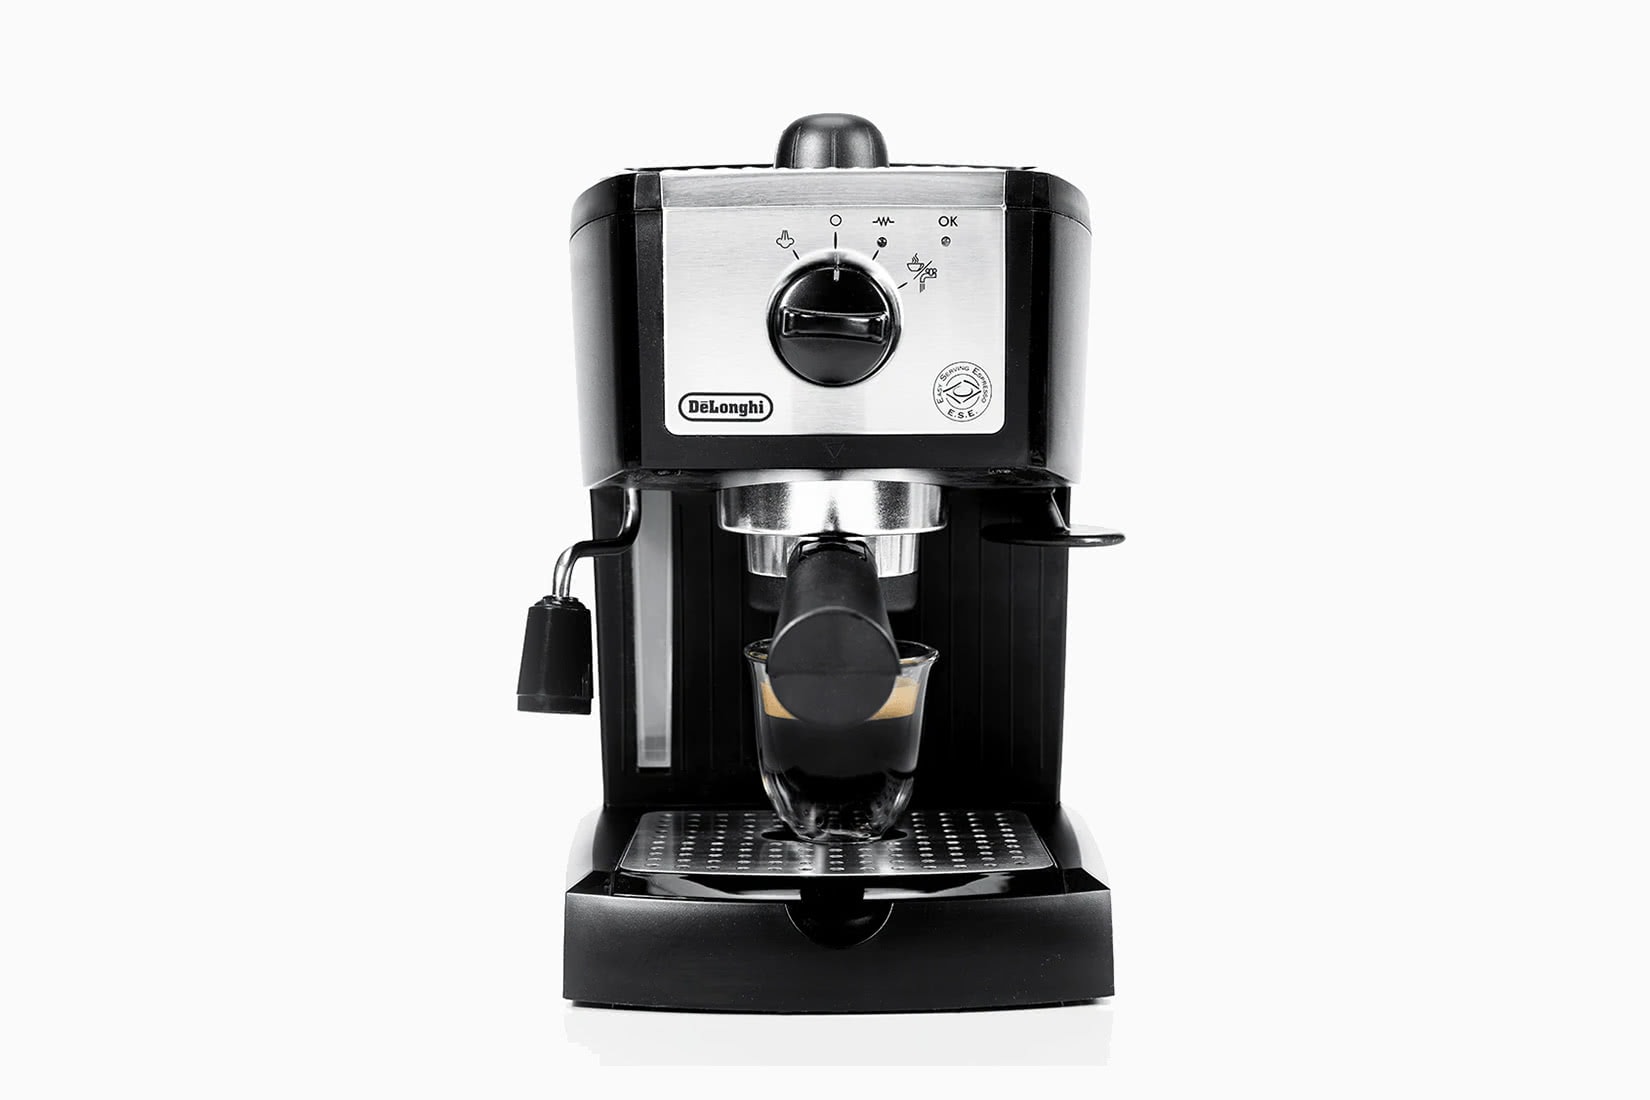 best espresso machine value de longhi review - Luxe Digital